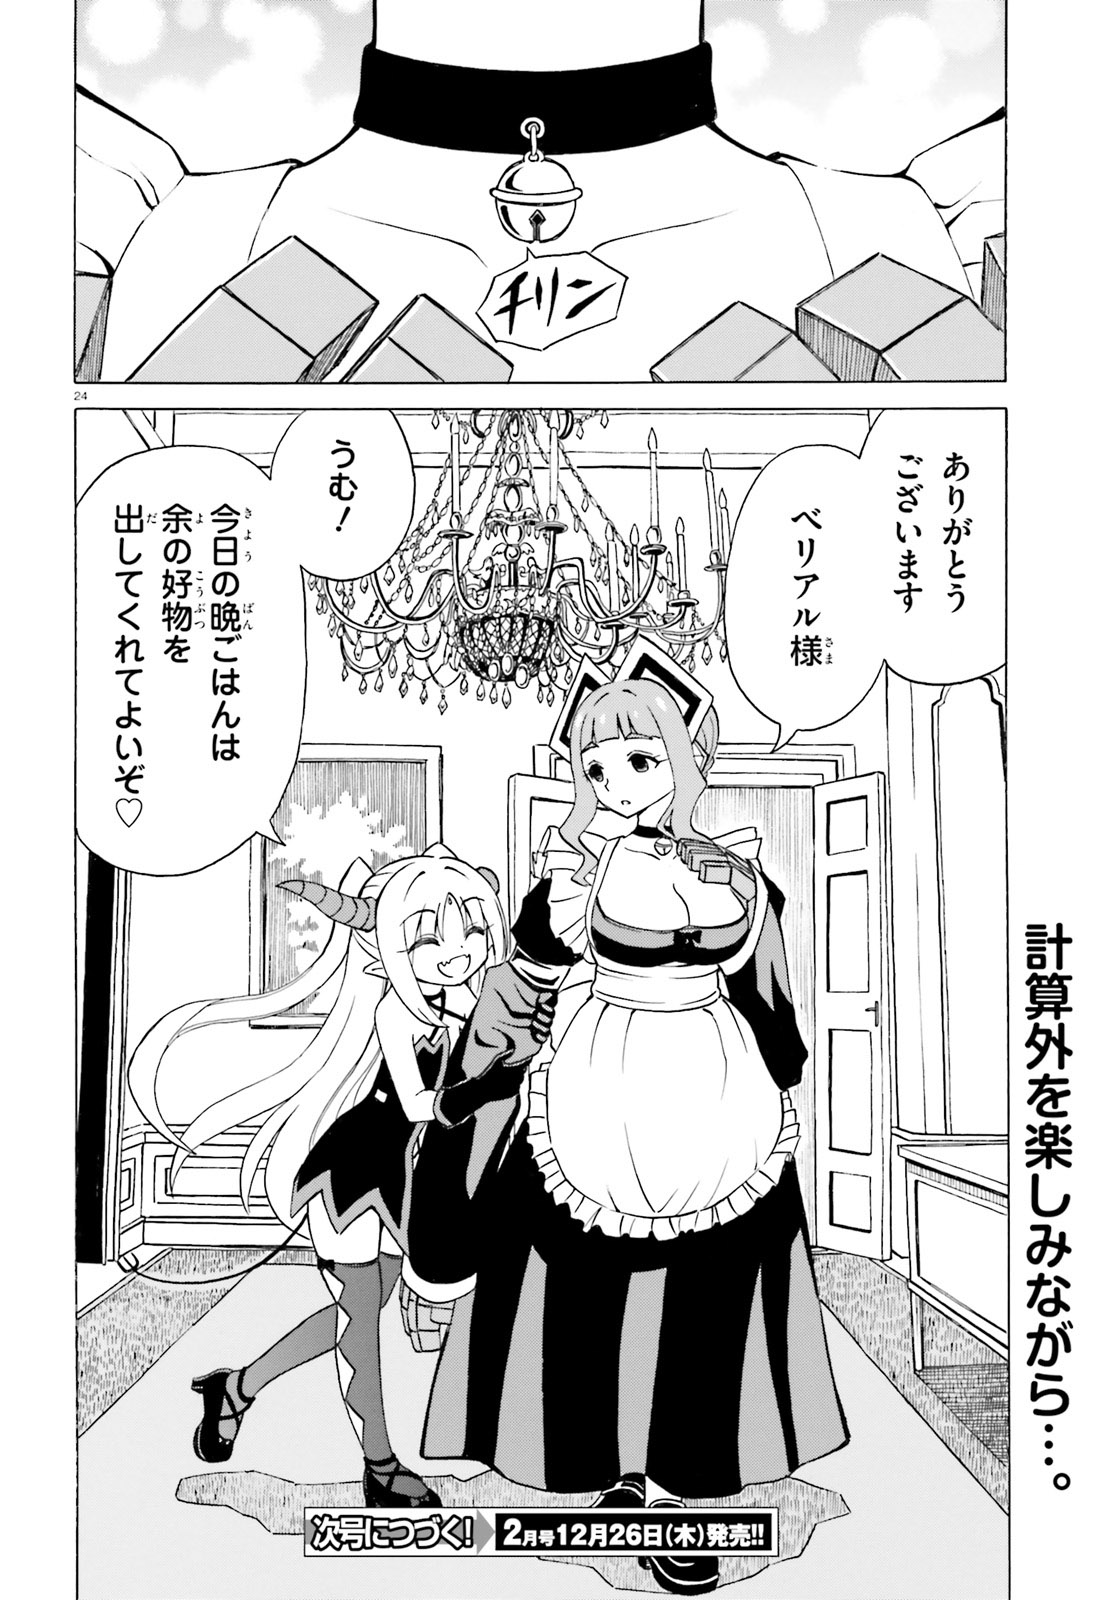 Beriaru-sama wa Shitenno no Naka Demo × × - Chapter 11 - Page 24